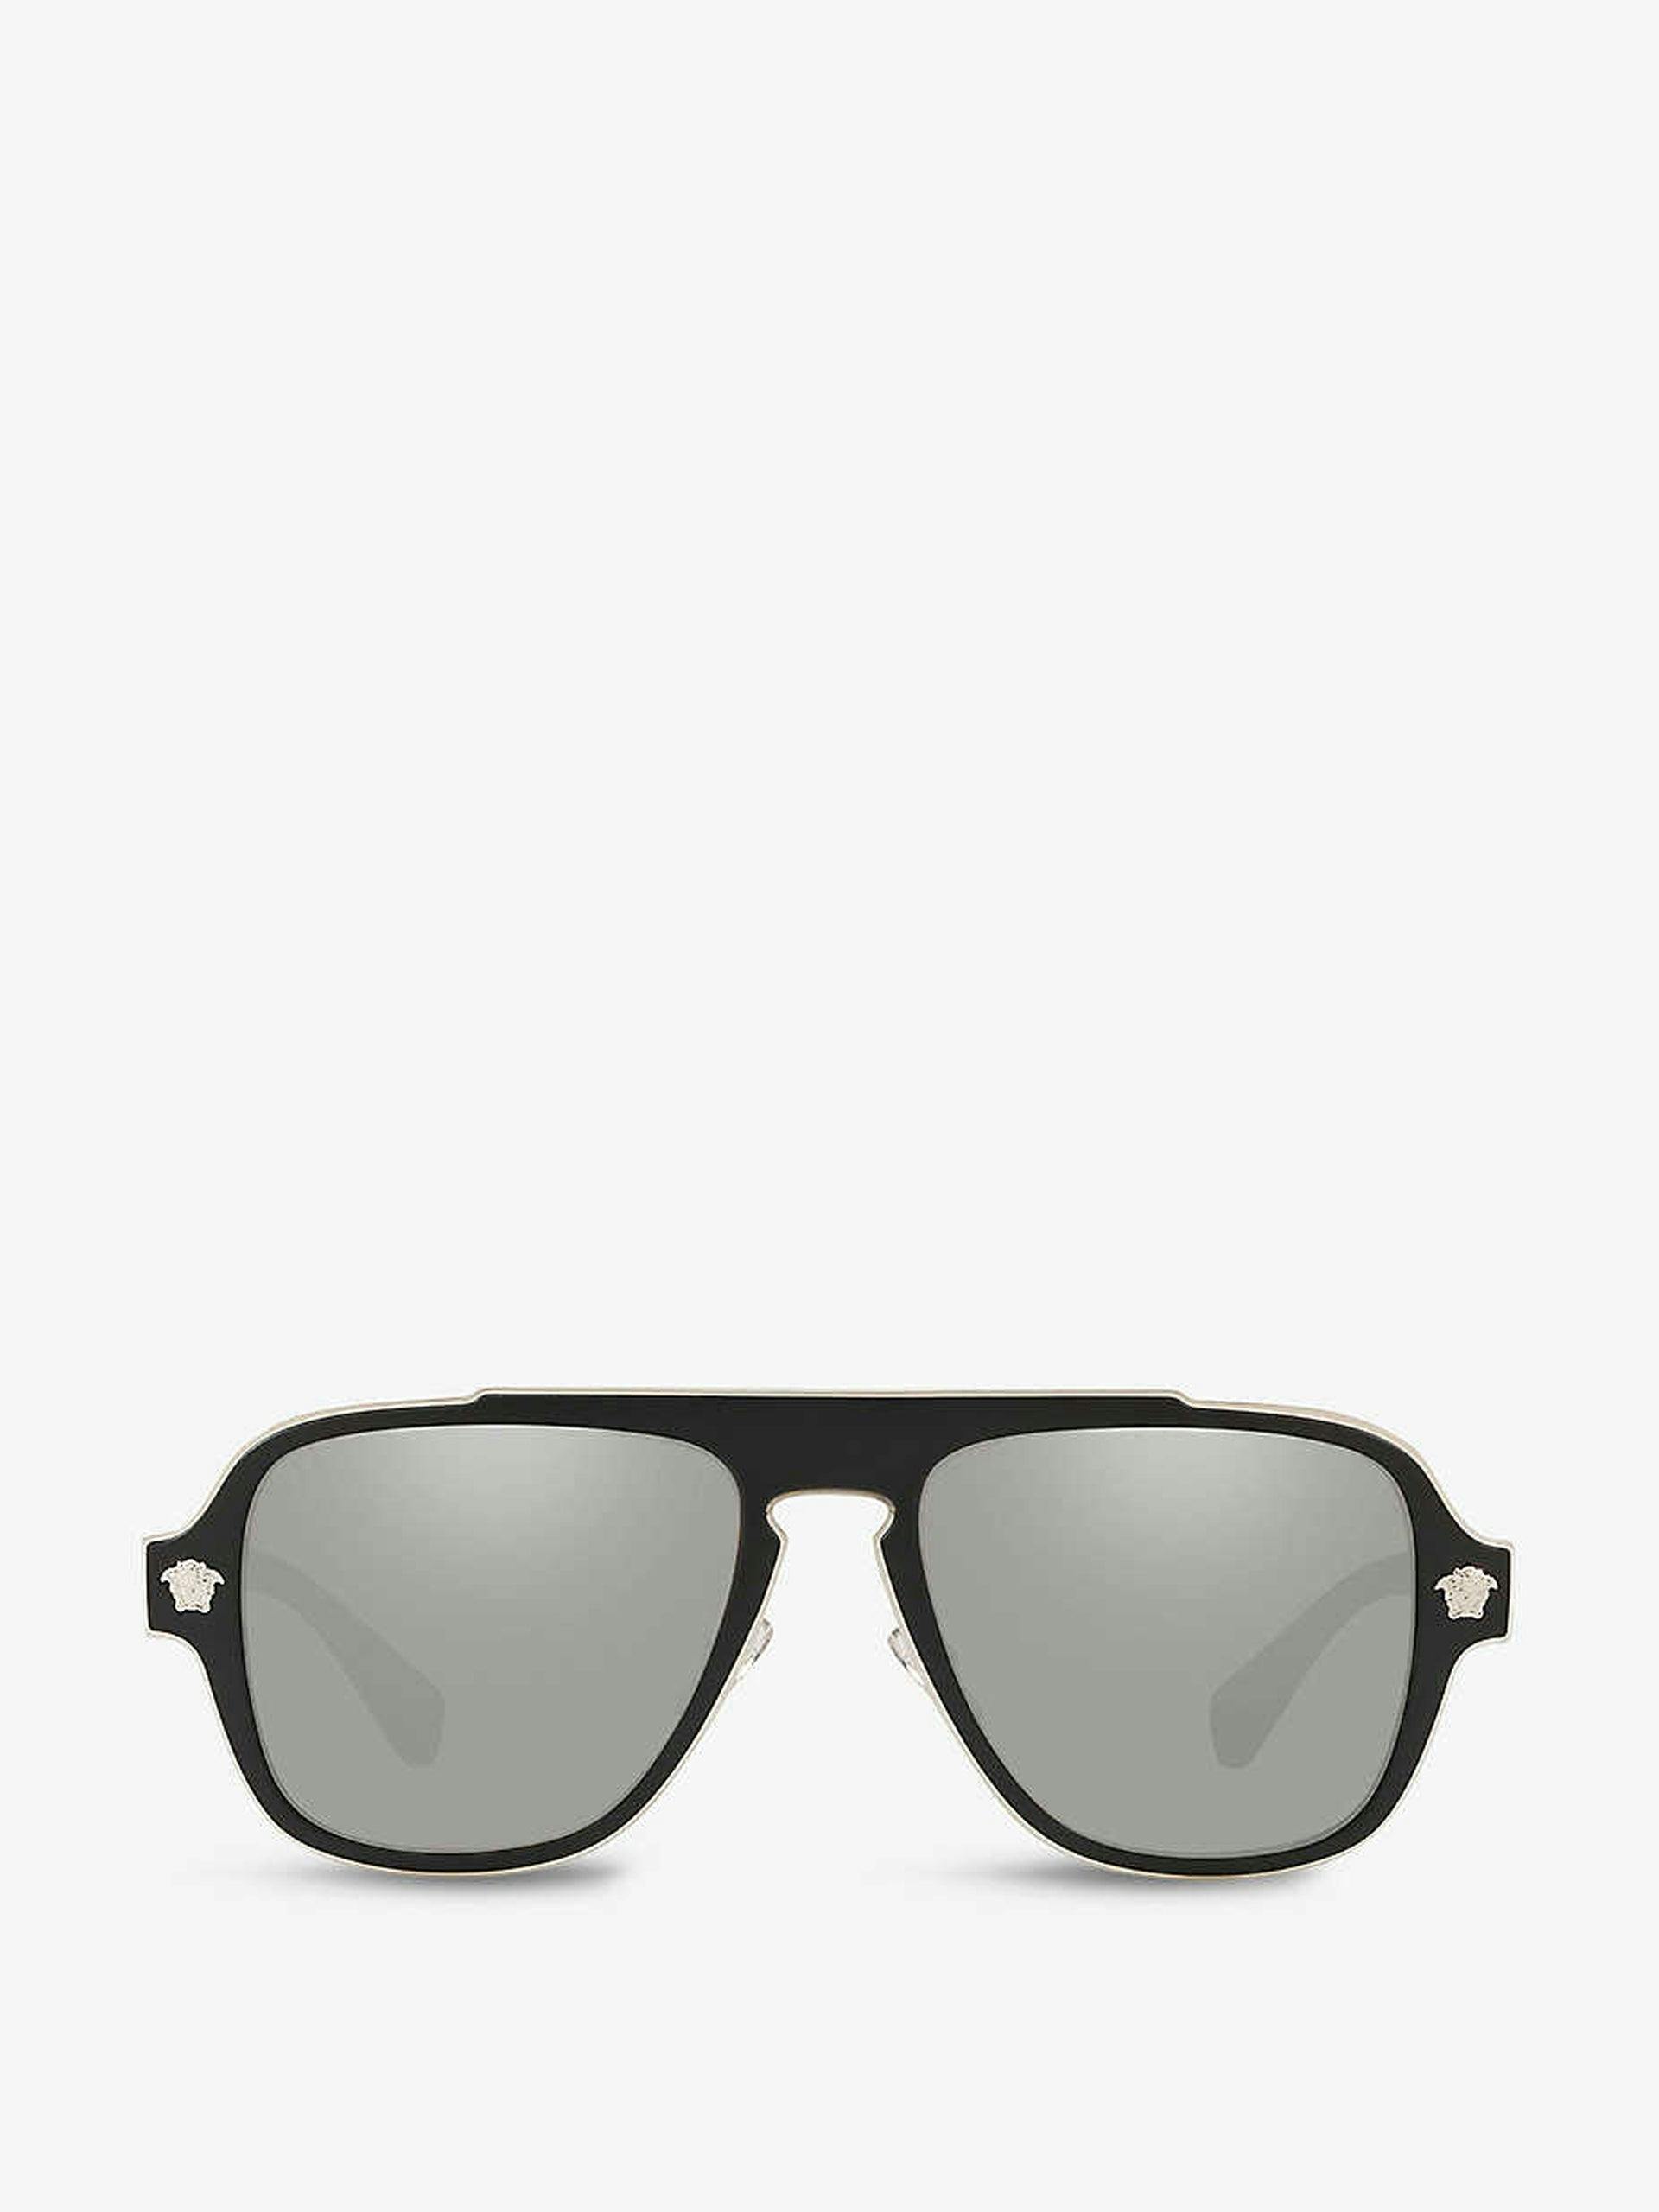 Black mirrored square sunglasses